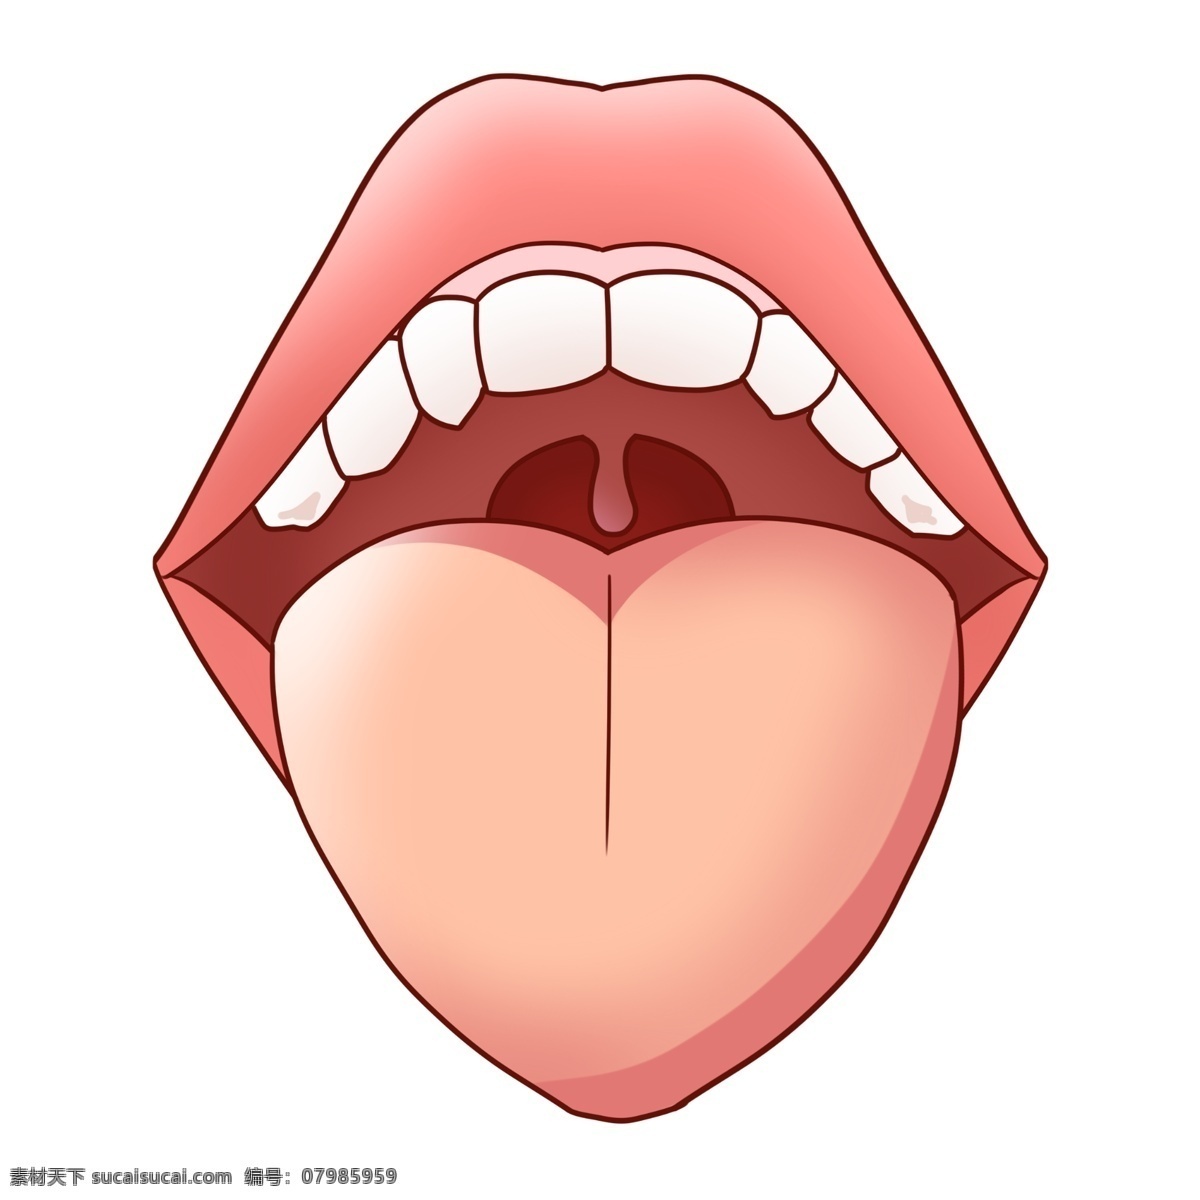 人体 嘴巴 舌头 器官 人体器官 人体插画 卡通舌头 嘴唇 嘴 牙齿 牙龈 嘴唇器官